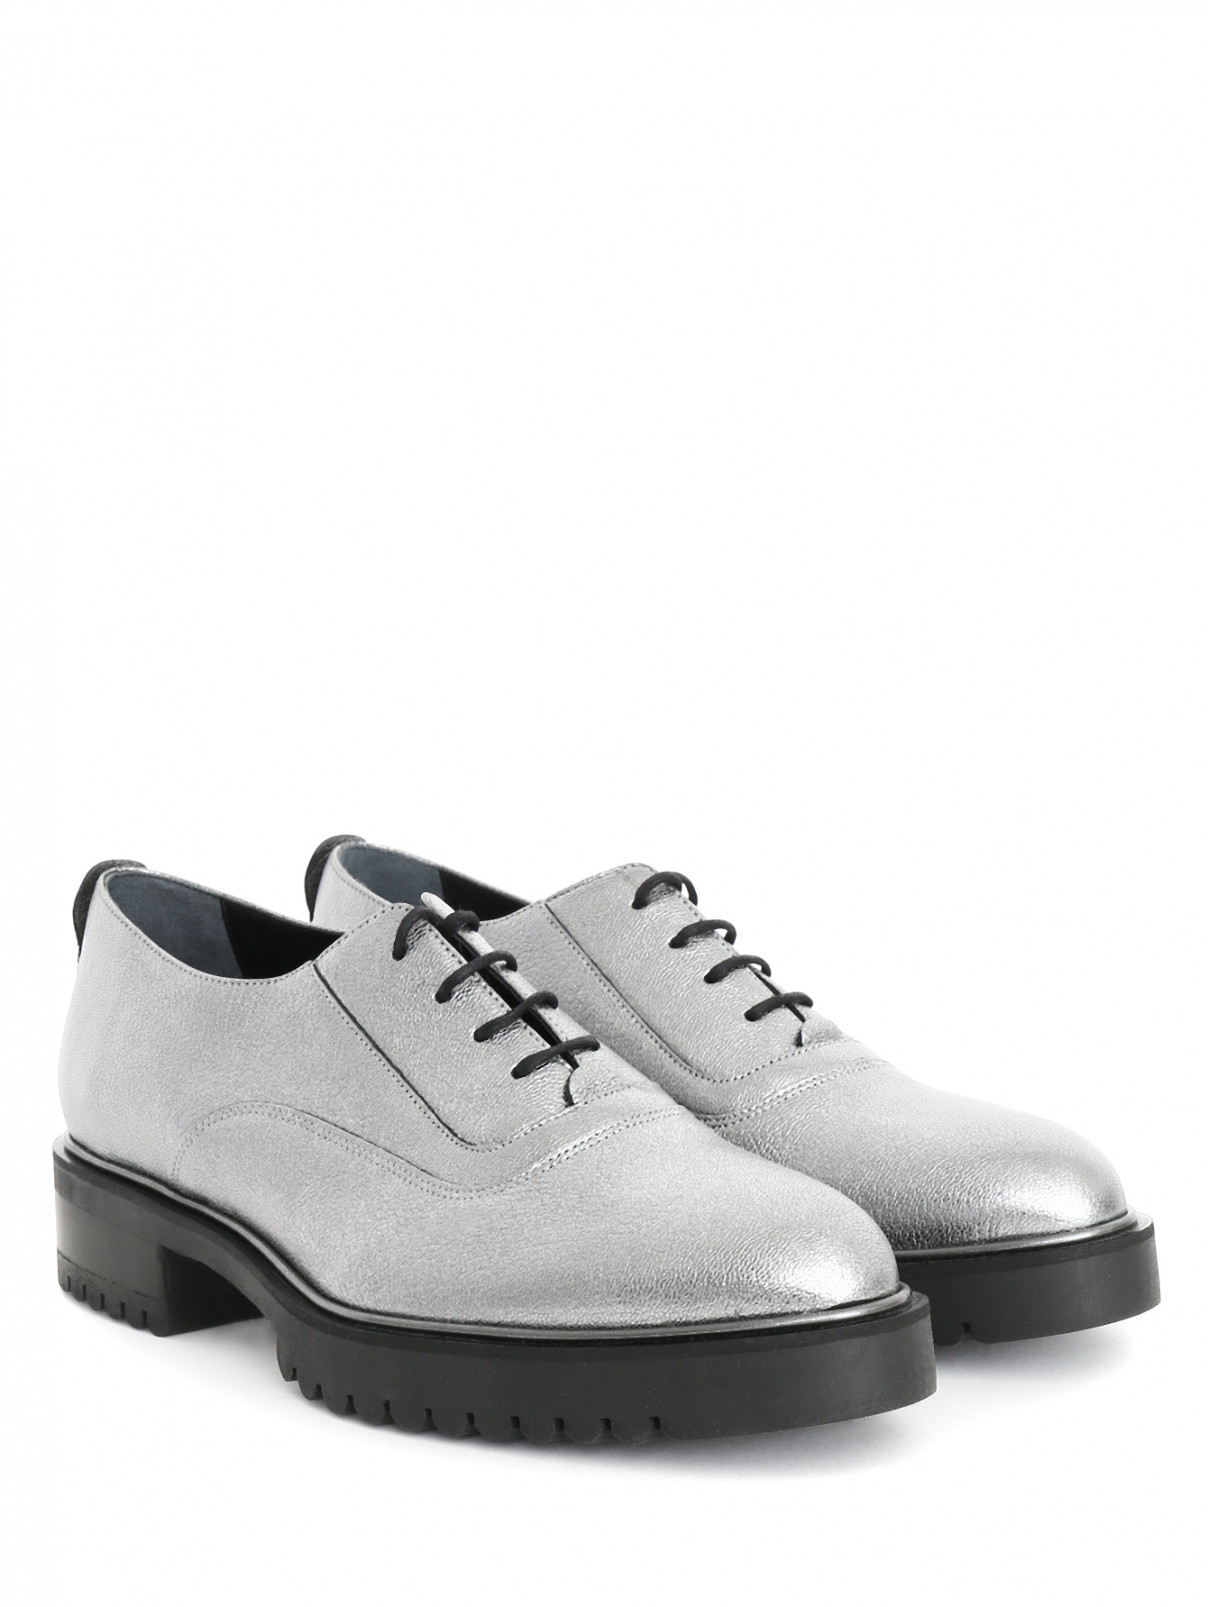 Ботинки на шнуровке из металлизированной кожи Max&Co  –  Общий вид  – Цвет:  Серый